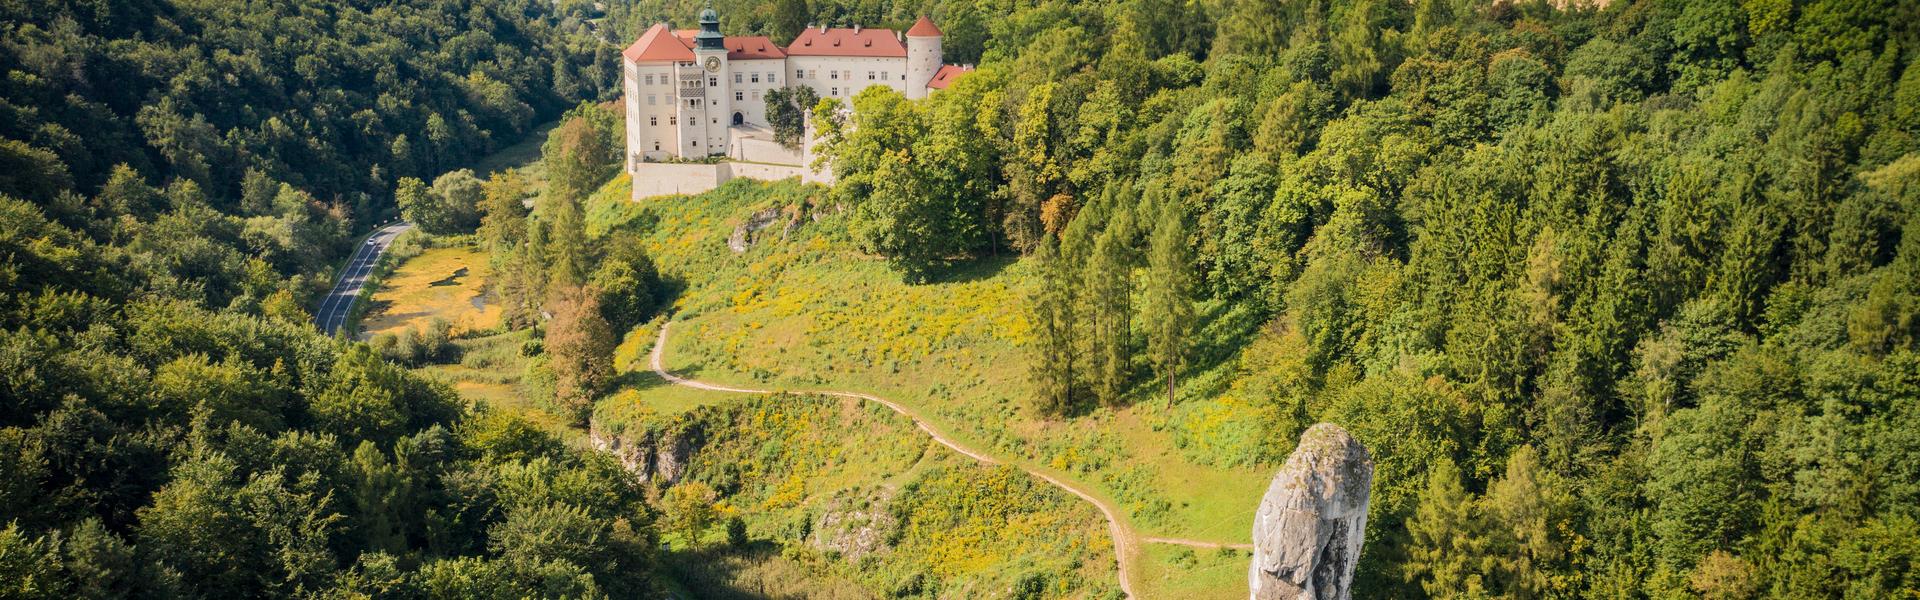 Das Schloss von Pieskowa Skała, vom Wald umgeben. Felder in der Ferne.